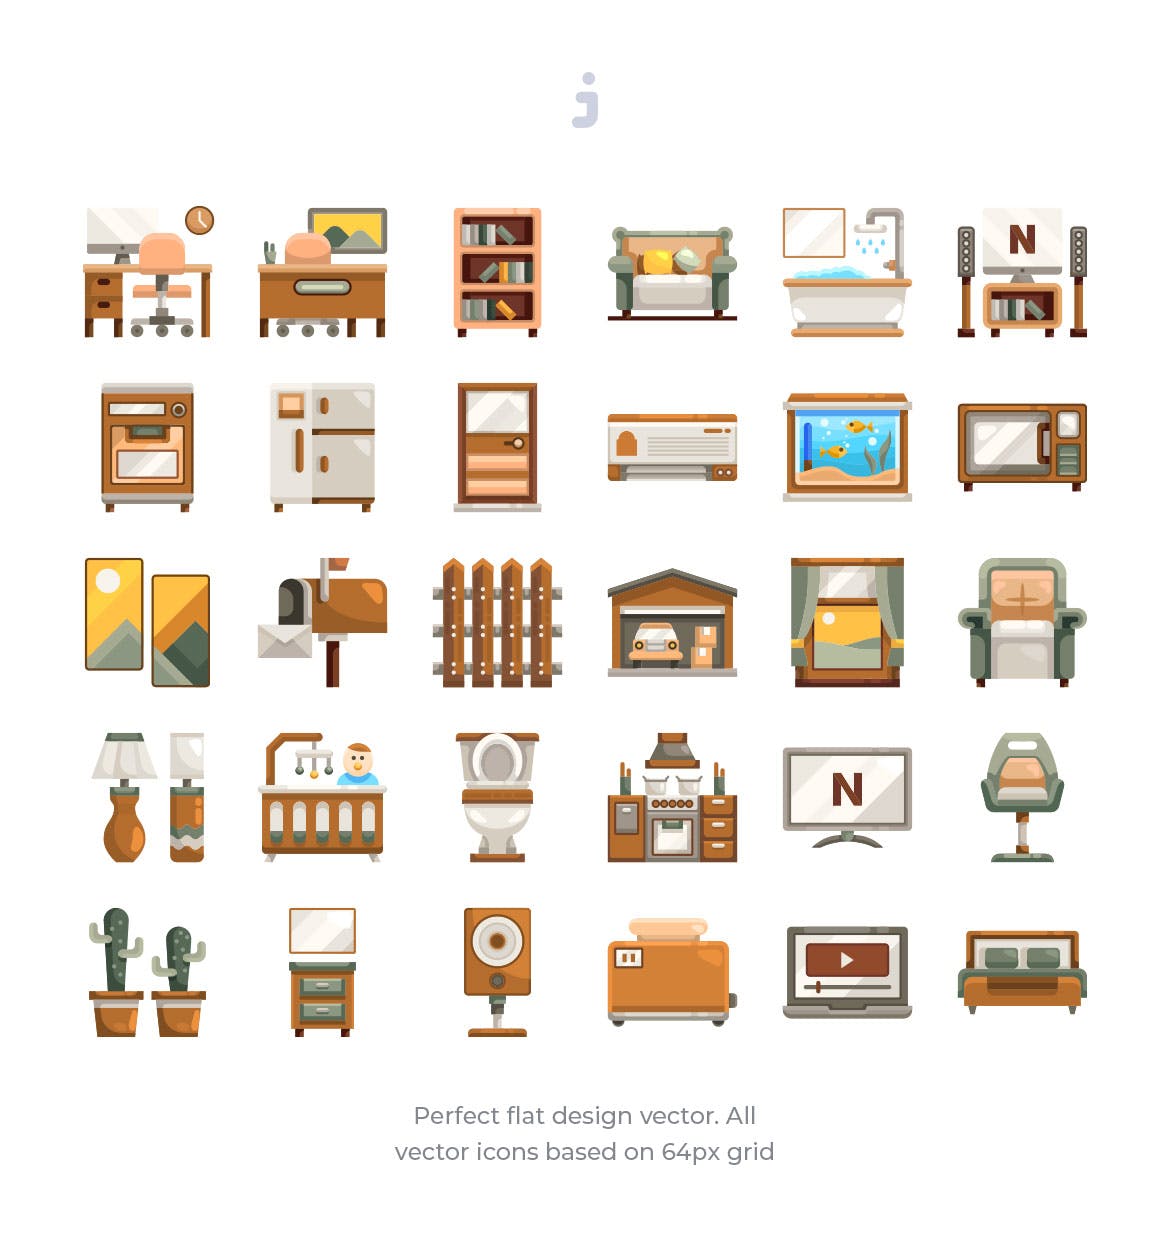 30枚家居生活扁平化设计风格矢量图标 30 Home and living Icons – Flat插图(1)